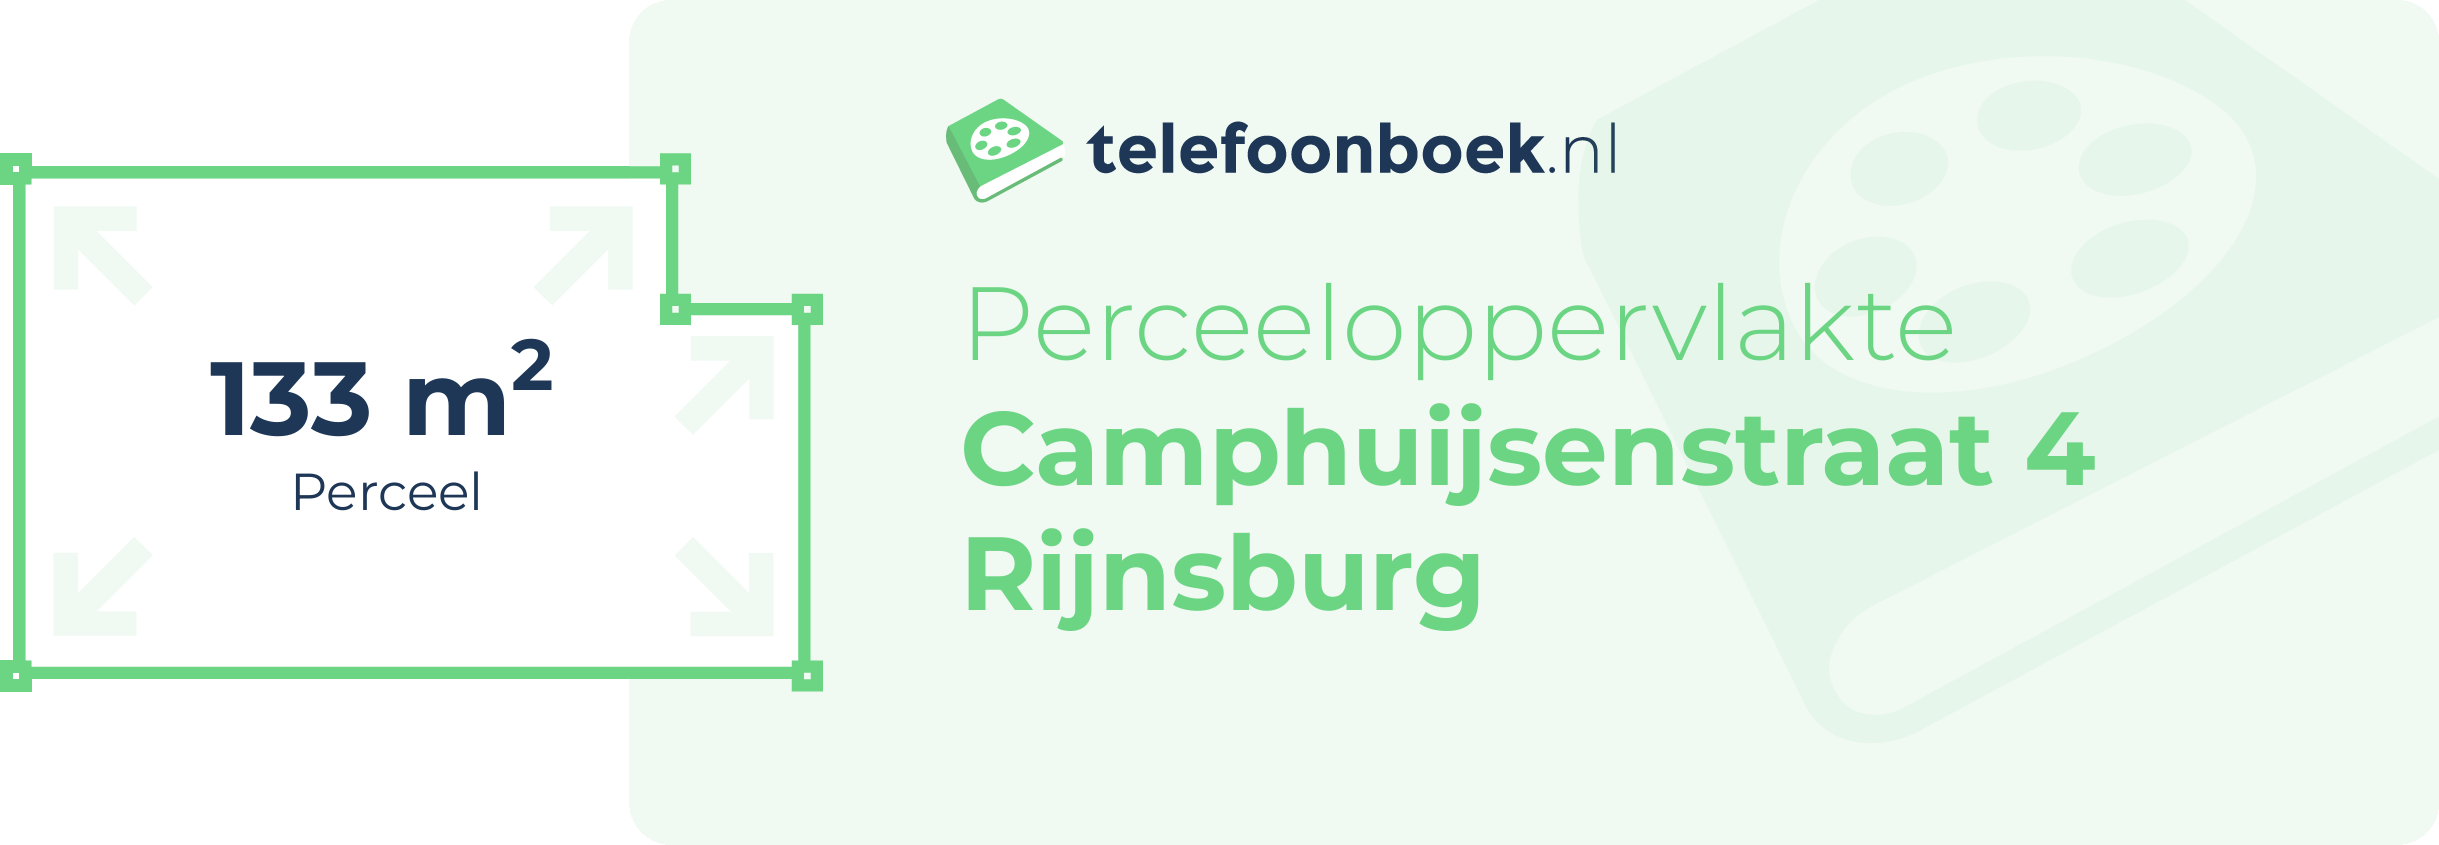 Perceeloppervlakte Camphuijsenstraat 4 Rijnsburg